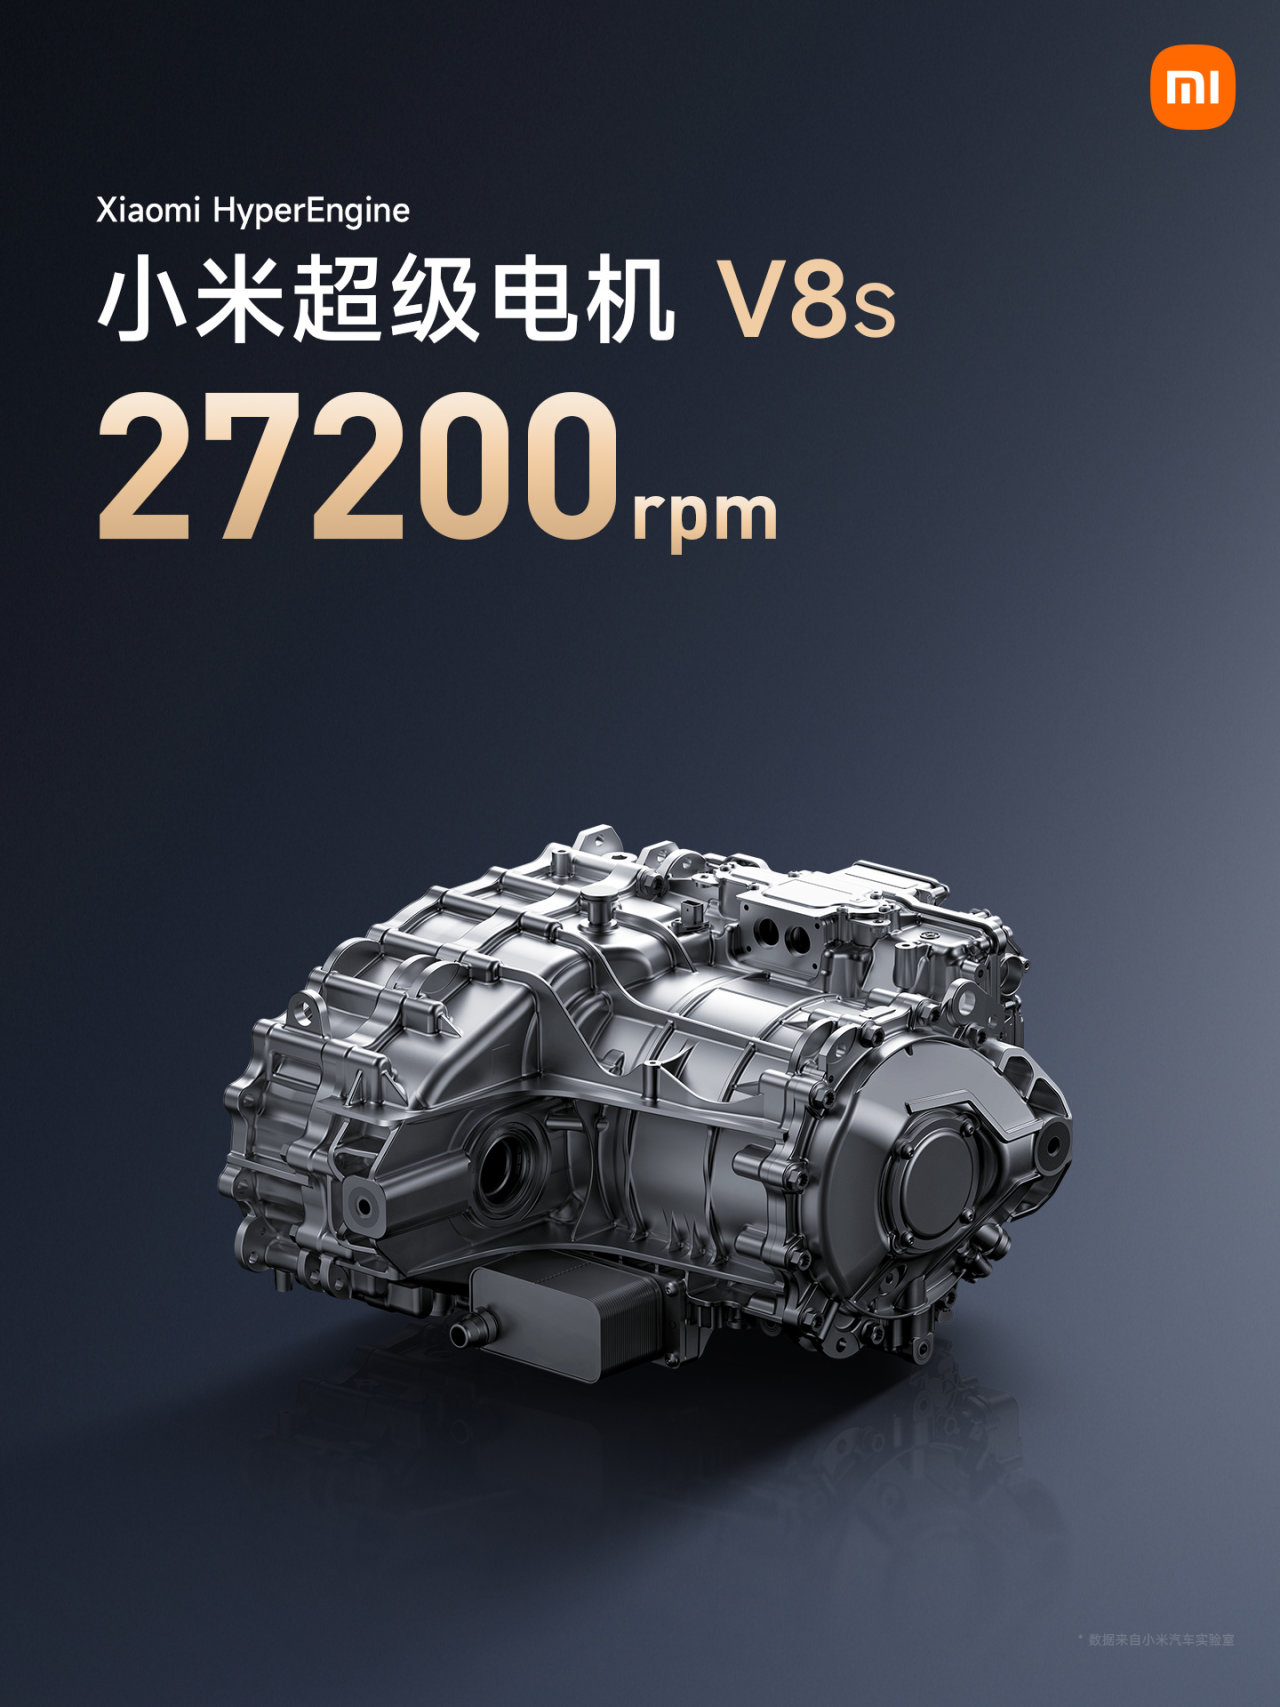 【愛車基地】雷軍透露小米自研電機 V8s 年底上車，27200rpm 轉速業內第一